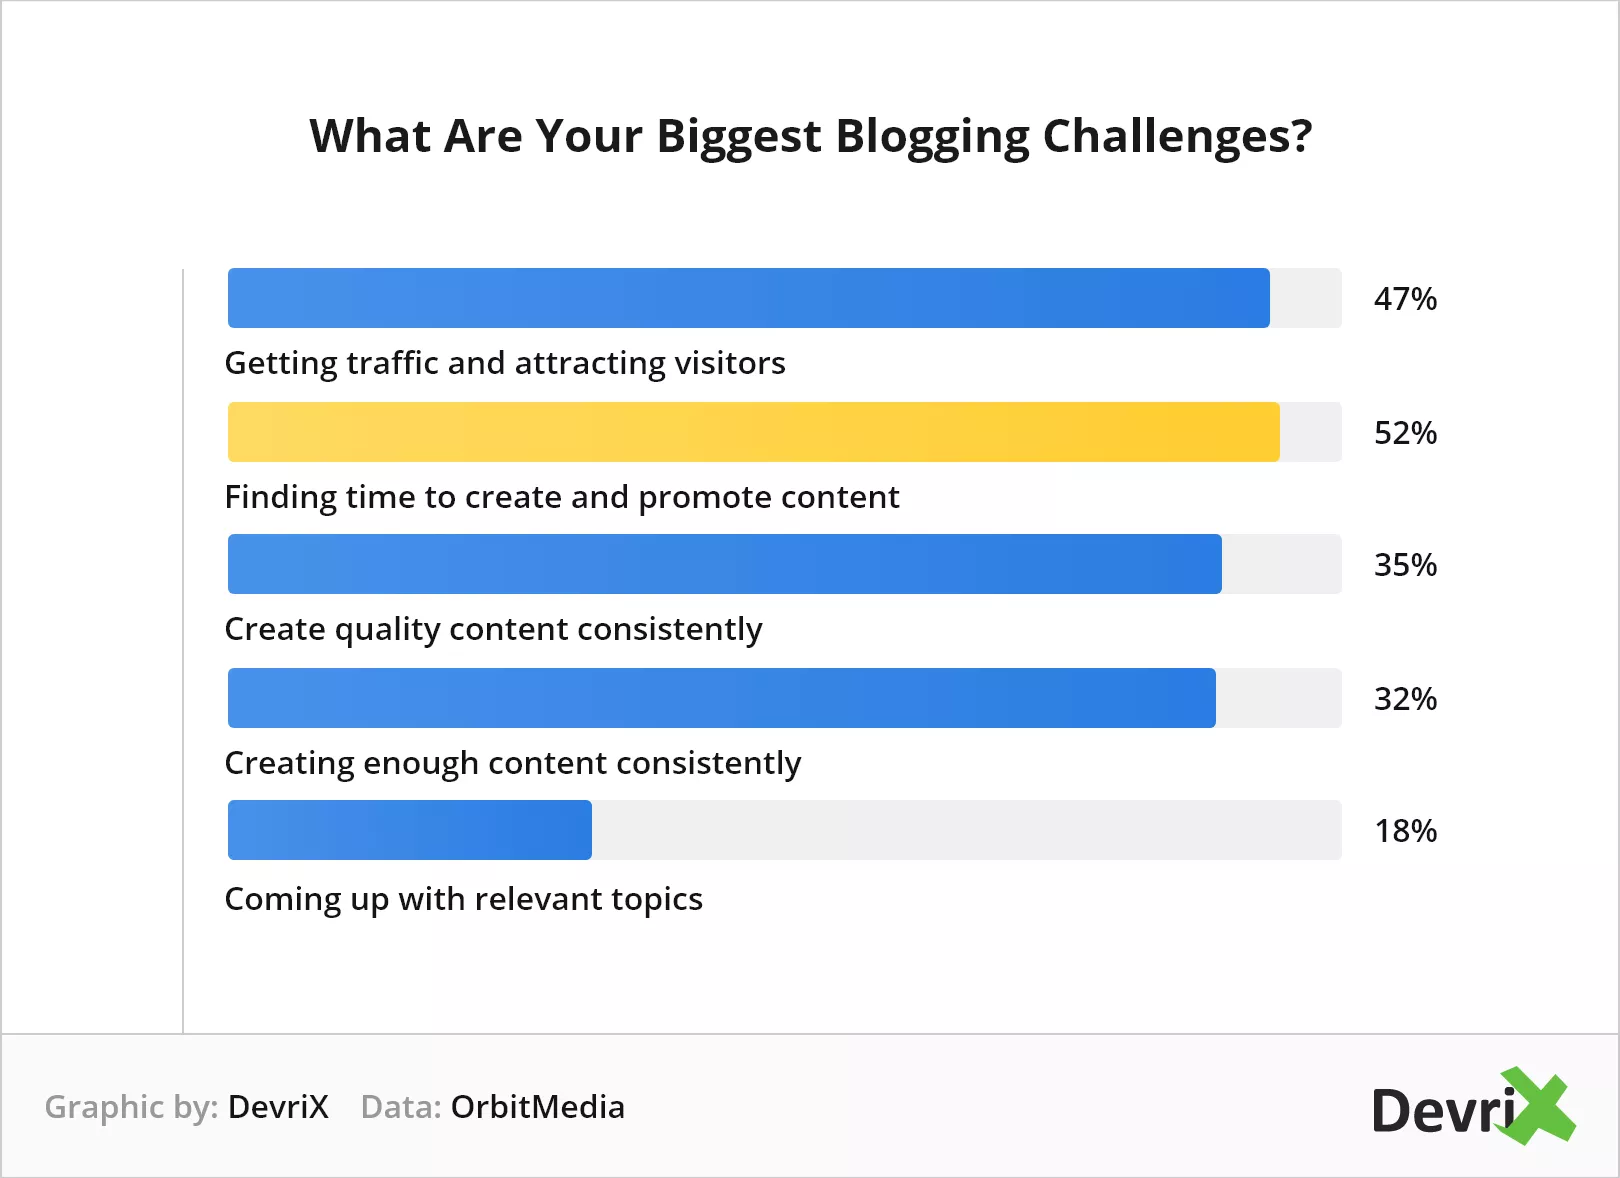 Quels sont vos plus grands défis en matière de blogs